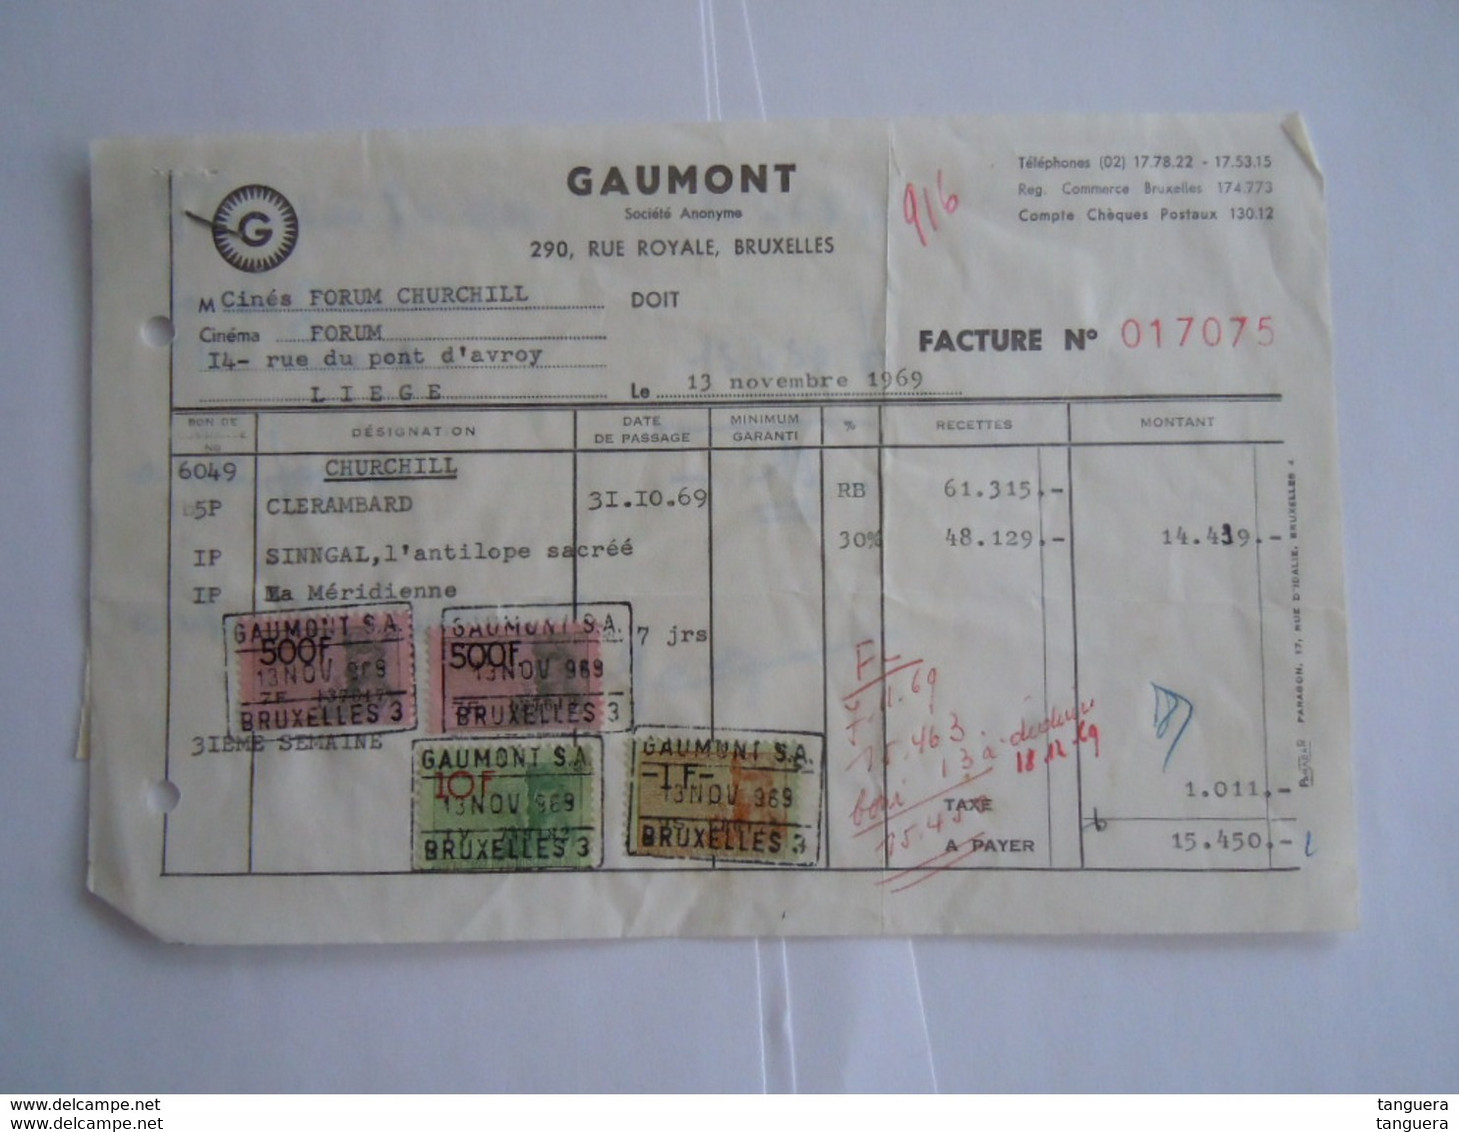 1969 Gaumont Bruxelles Films Facture Cinés Forum Churchill Liège Taxe 1011 Fr - Documents